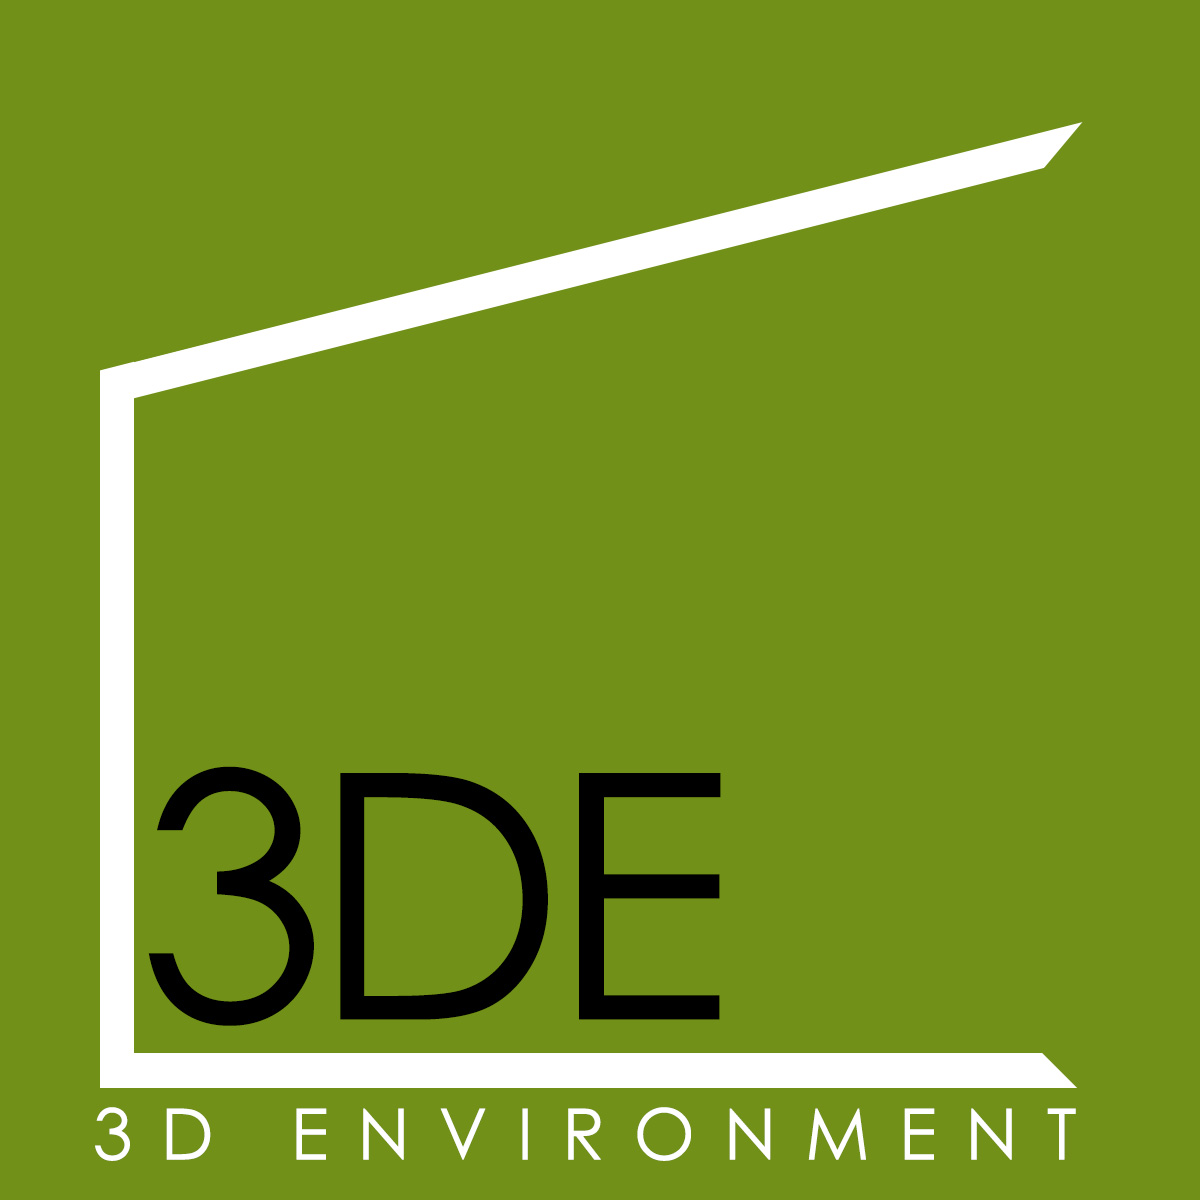 3D Environment